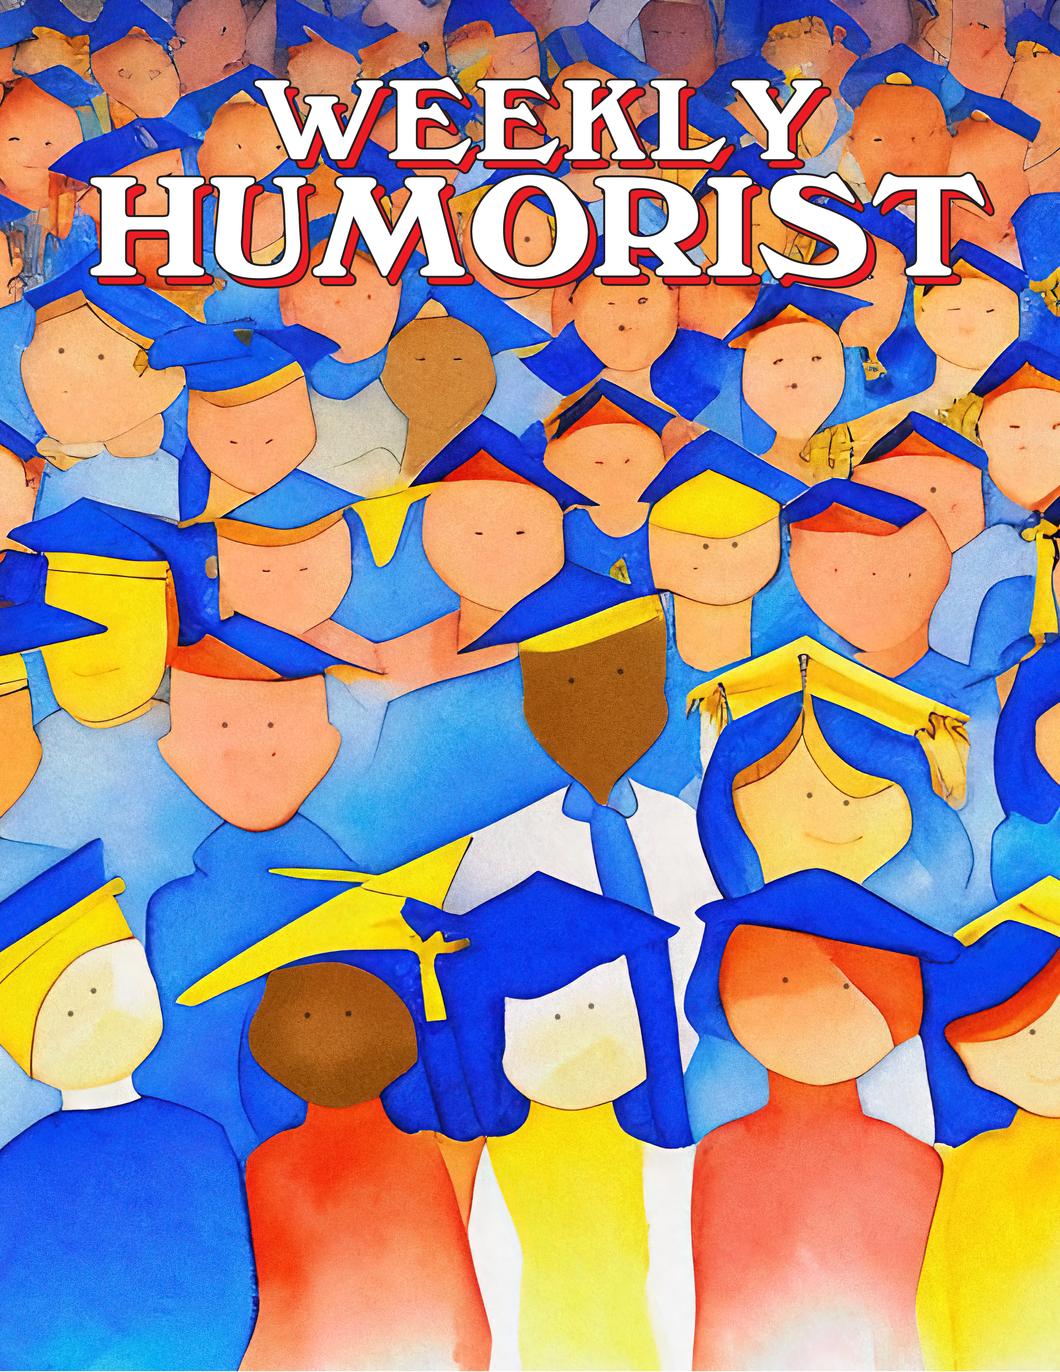 Weekly Humorist Magazine: Issue 288